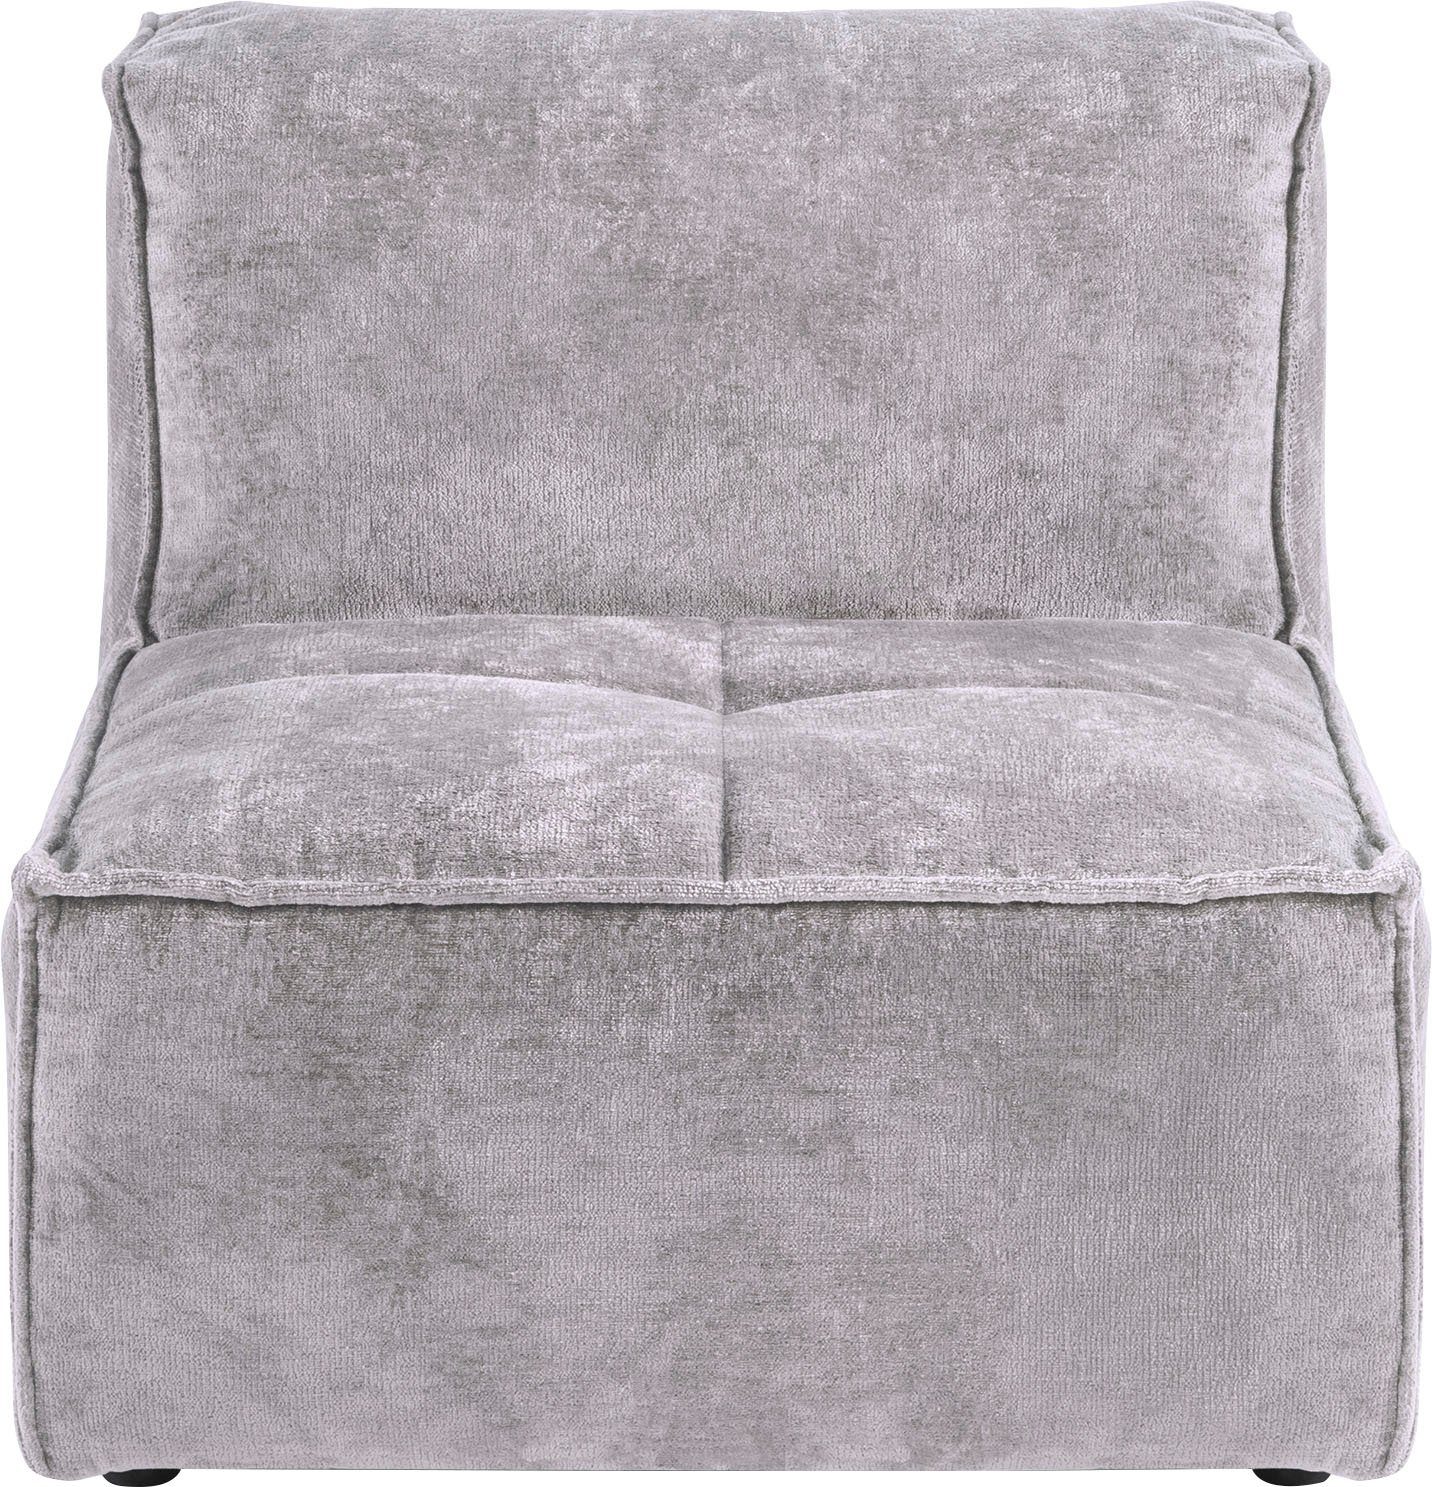 RAUM.ID Sofa-Mittelelement Monolid (1 St), als Modul oder separat verwendbar, für individuelle Zusammenstellung hellgrau